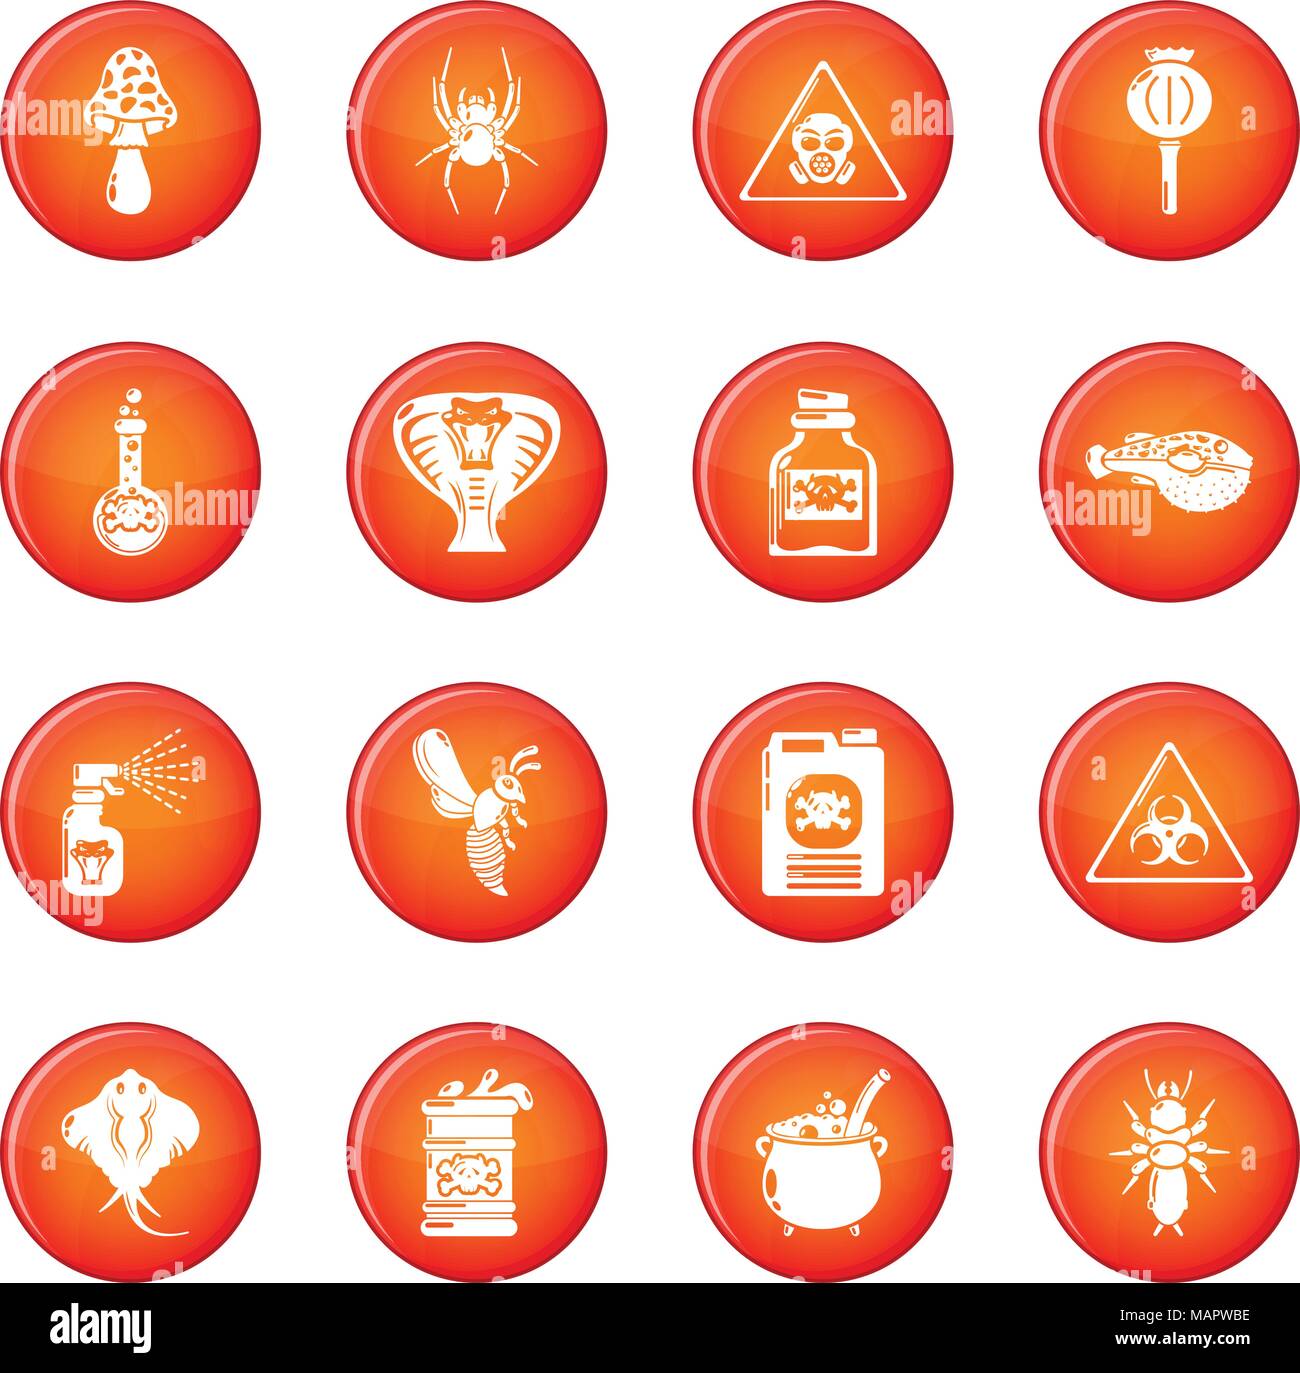 Danger Toxique Poison rouge vector icons set Illustration de Vecteur